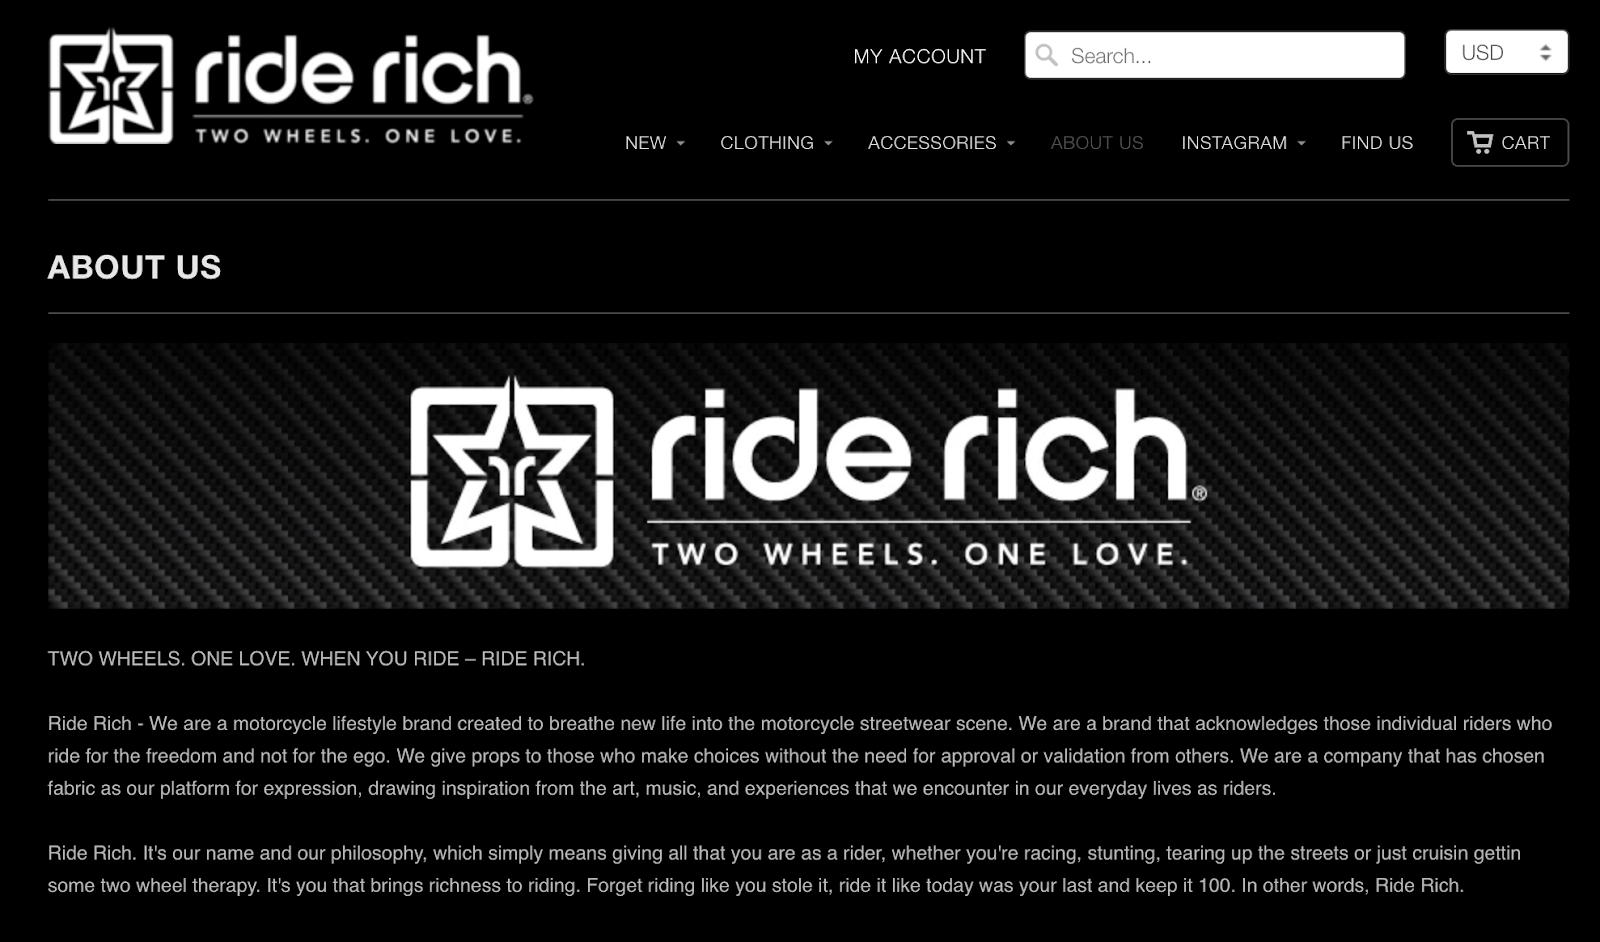 Ride Rich mission statement